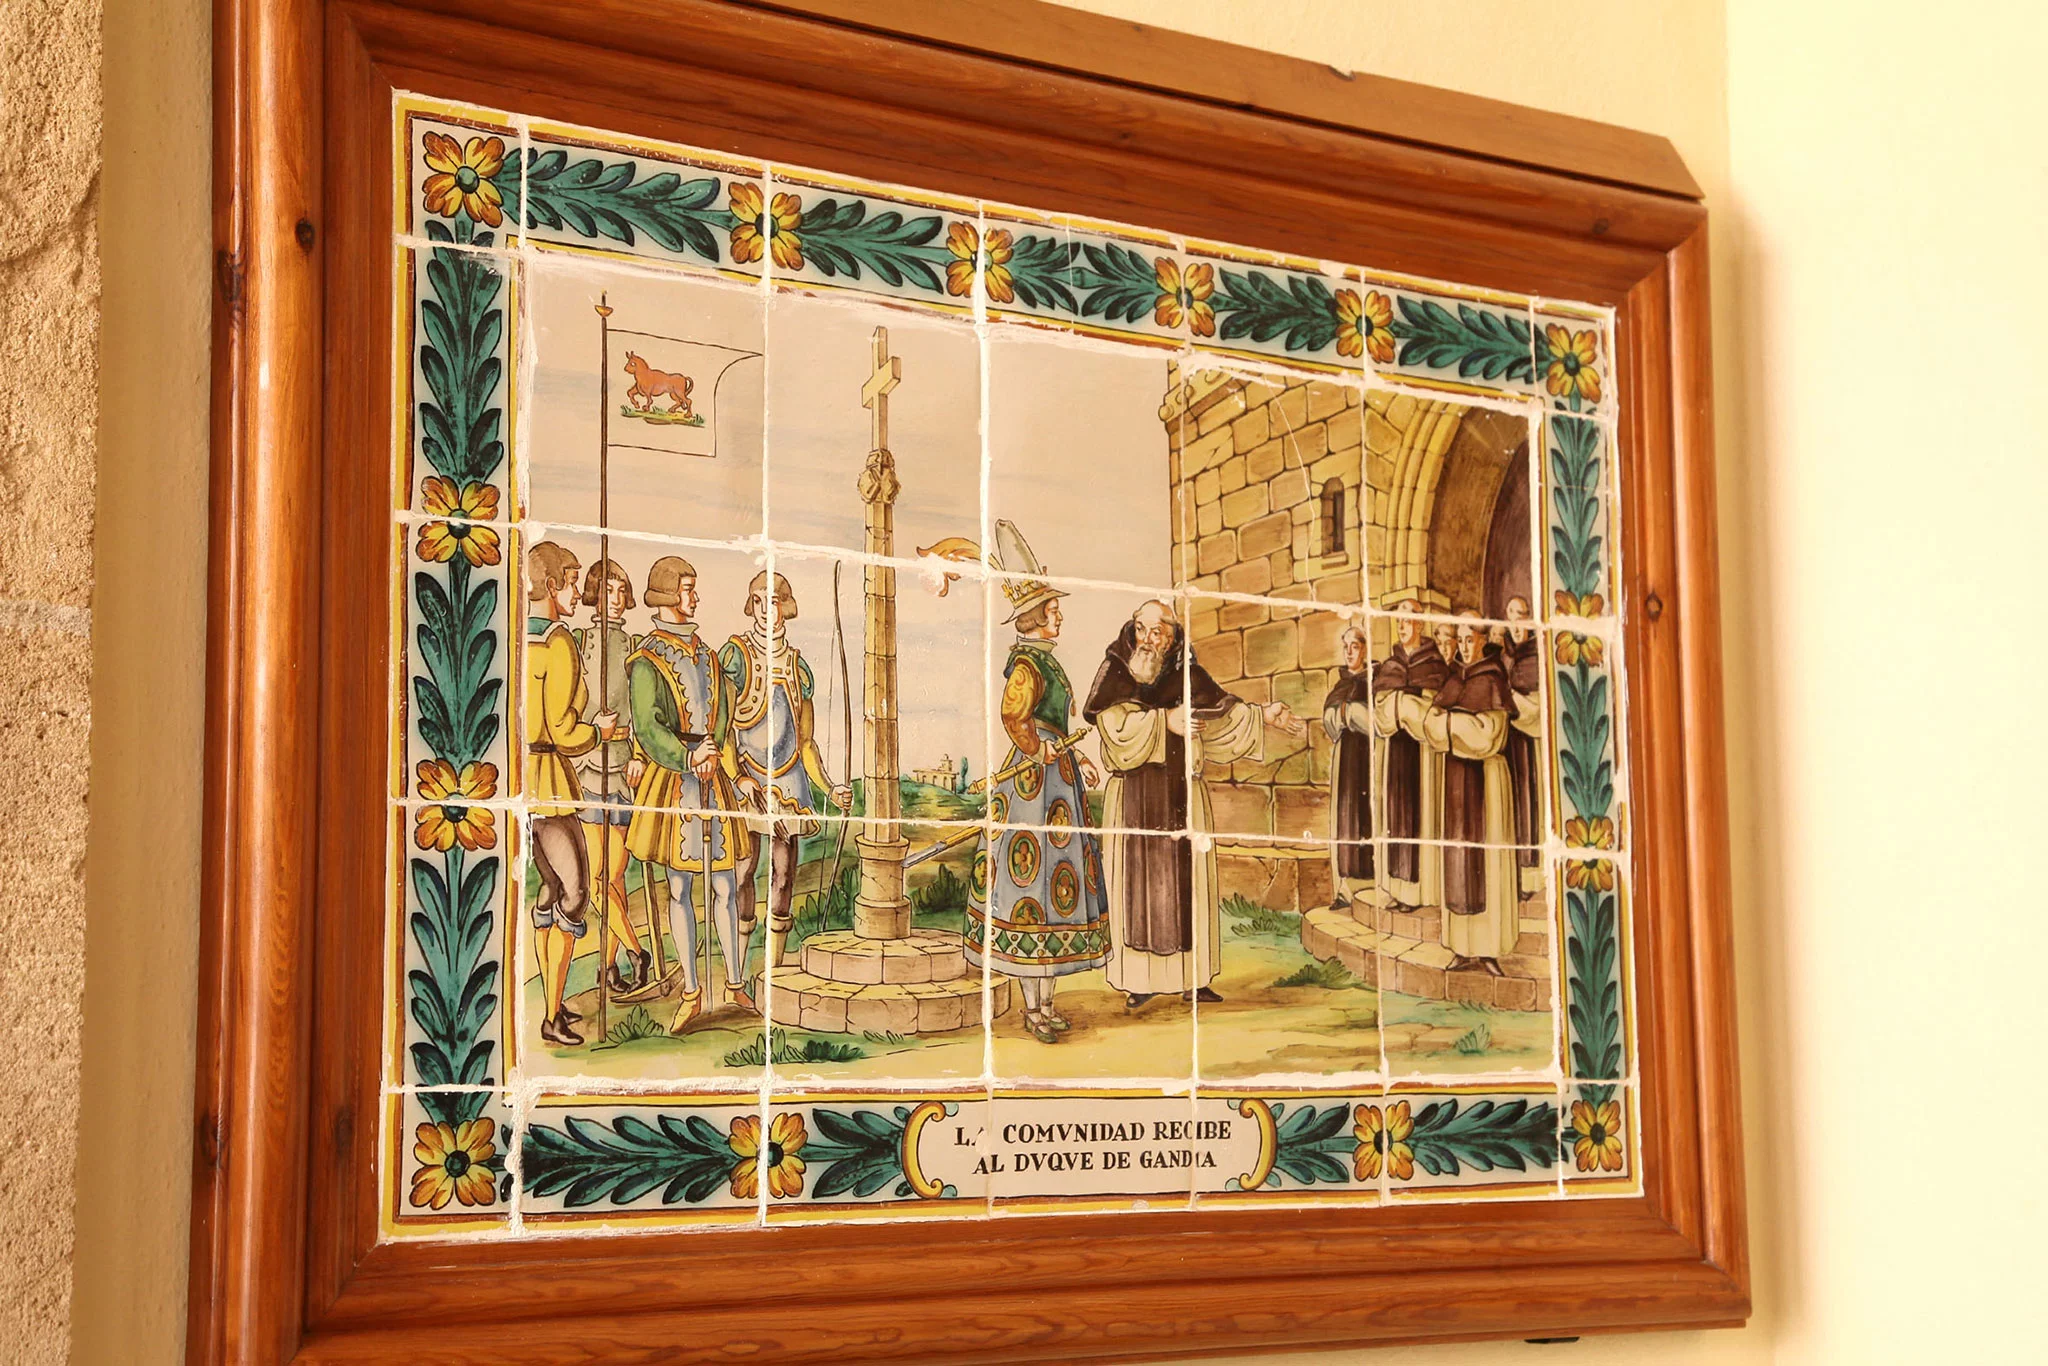 Representación en azulejos de la historia del Santuari de la Mare de Déu dels Àngels de Xàbia: la comunidad recibe al Duque de Gandía